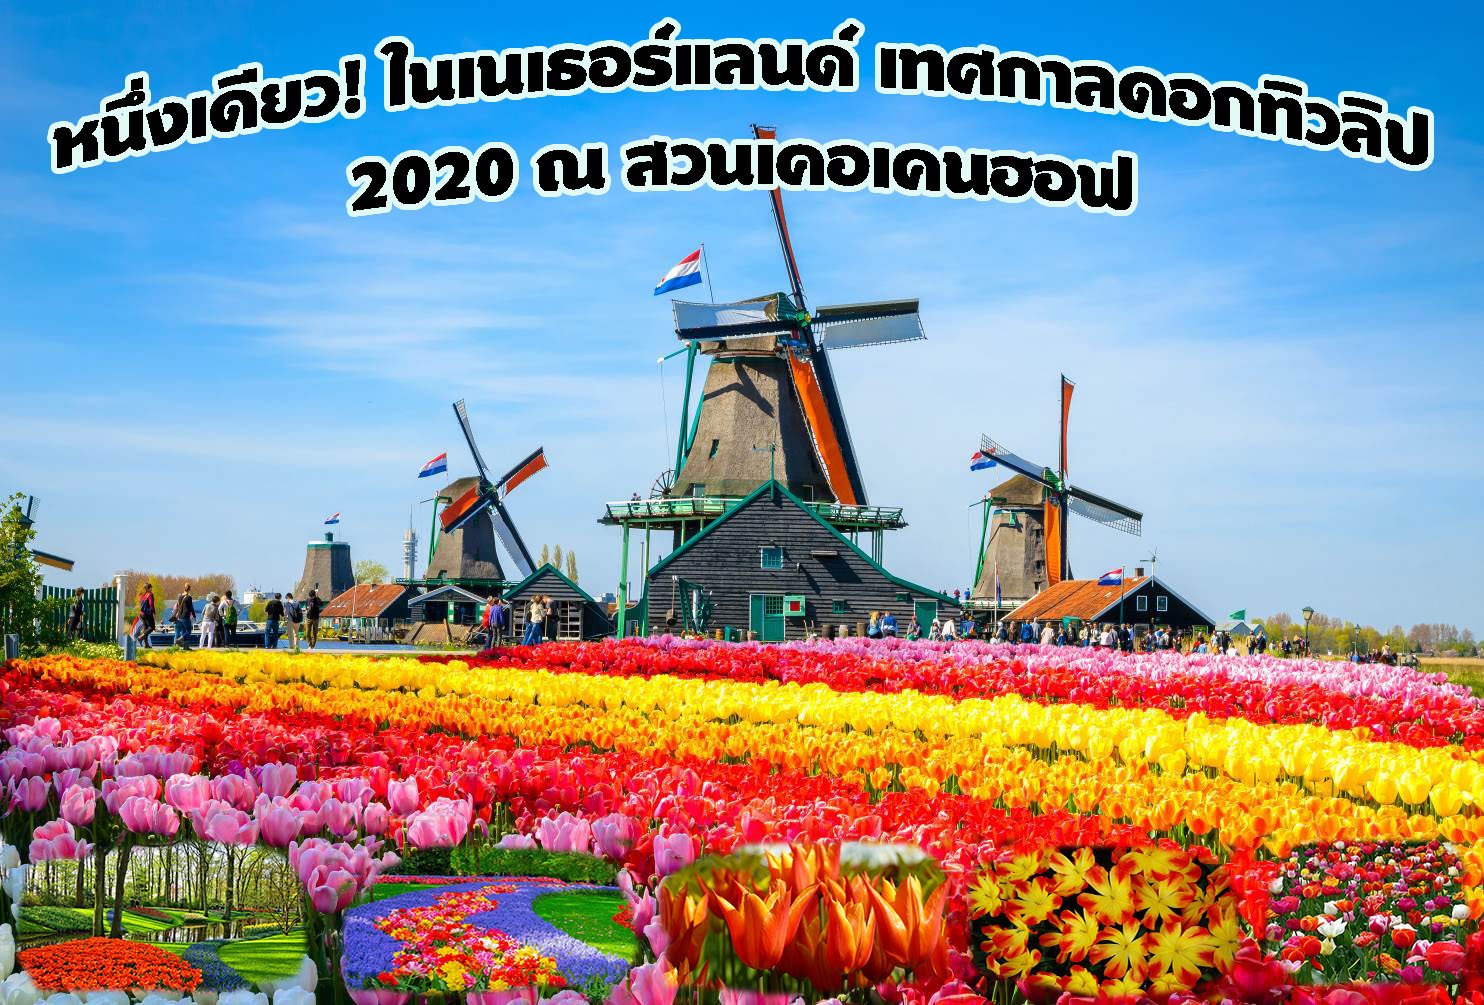 หนึ่งเดียว! ในเนเธอร์แลนด์ เทศกาลดอกทิวลิป 2020 ณ สวนเคอเคนฮอฟ